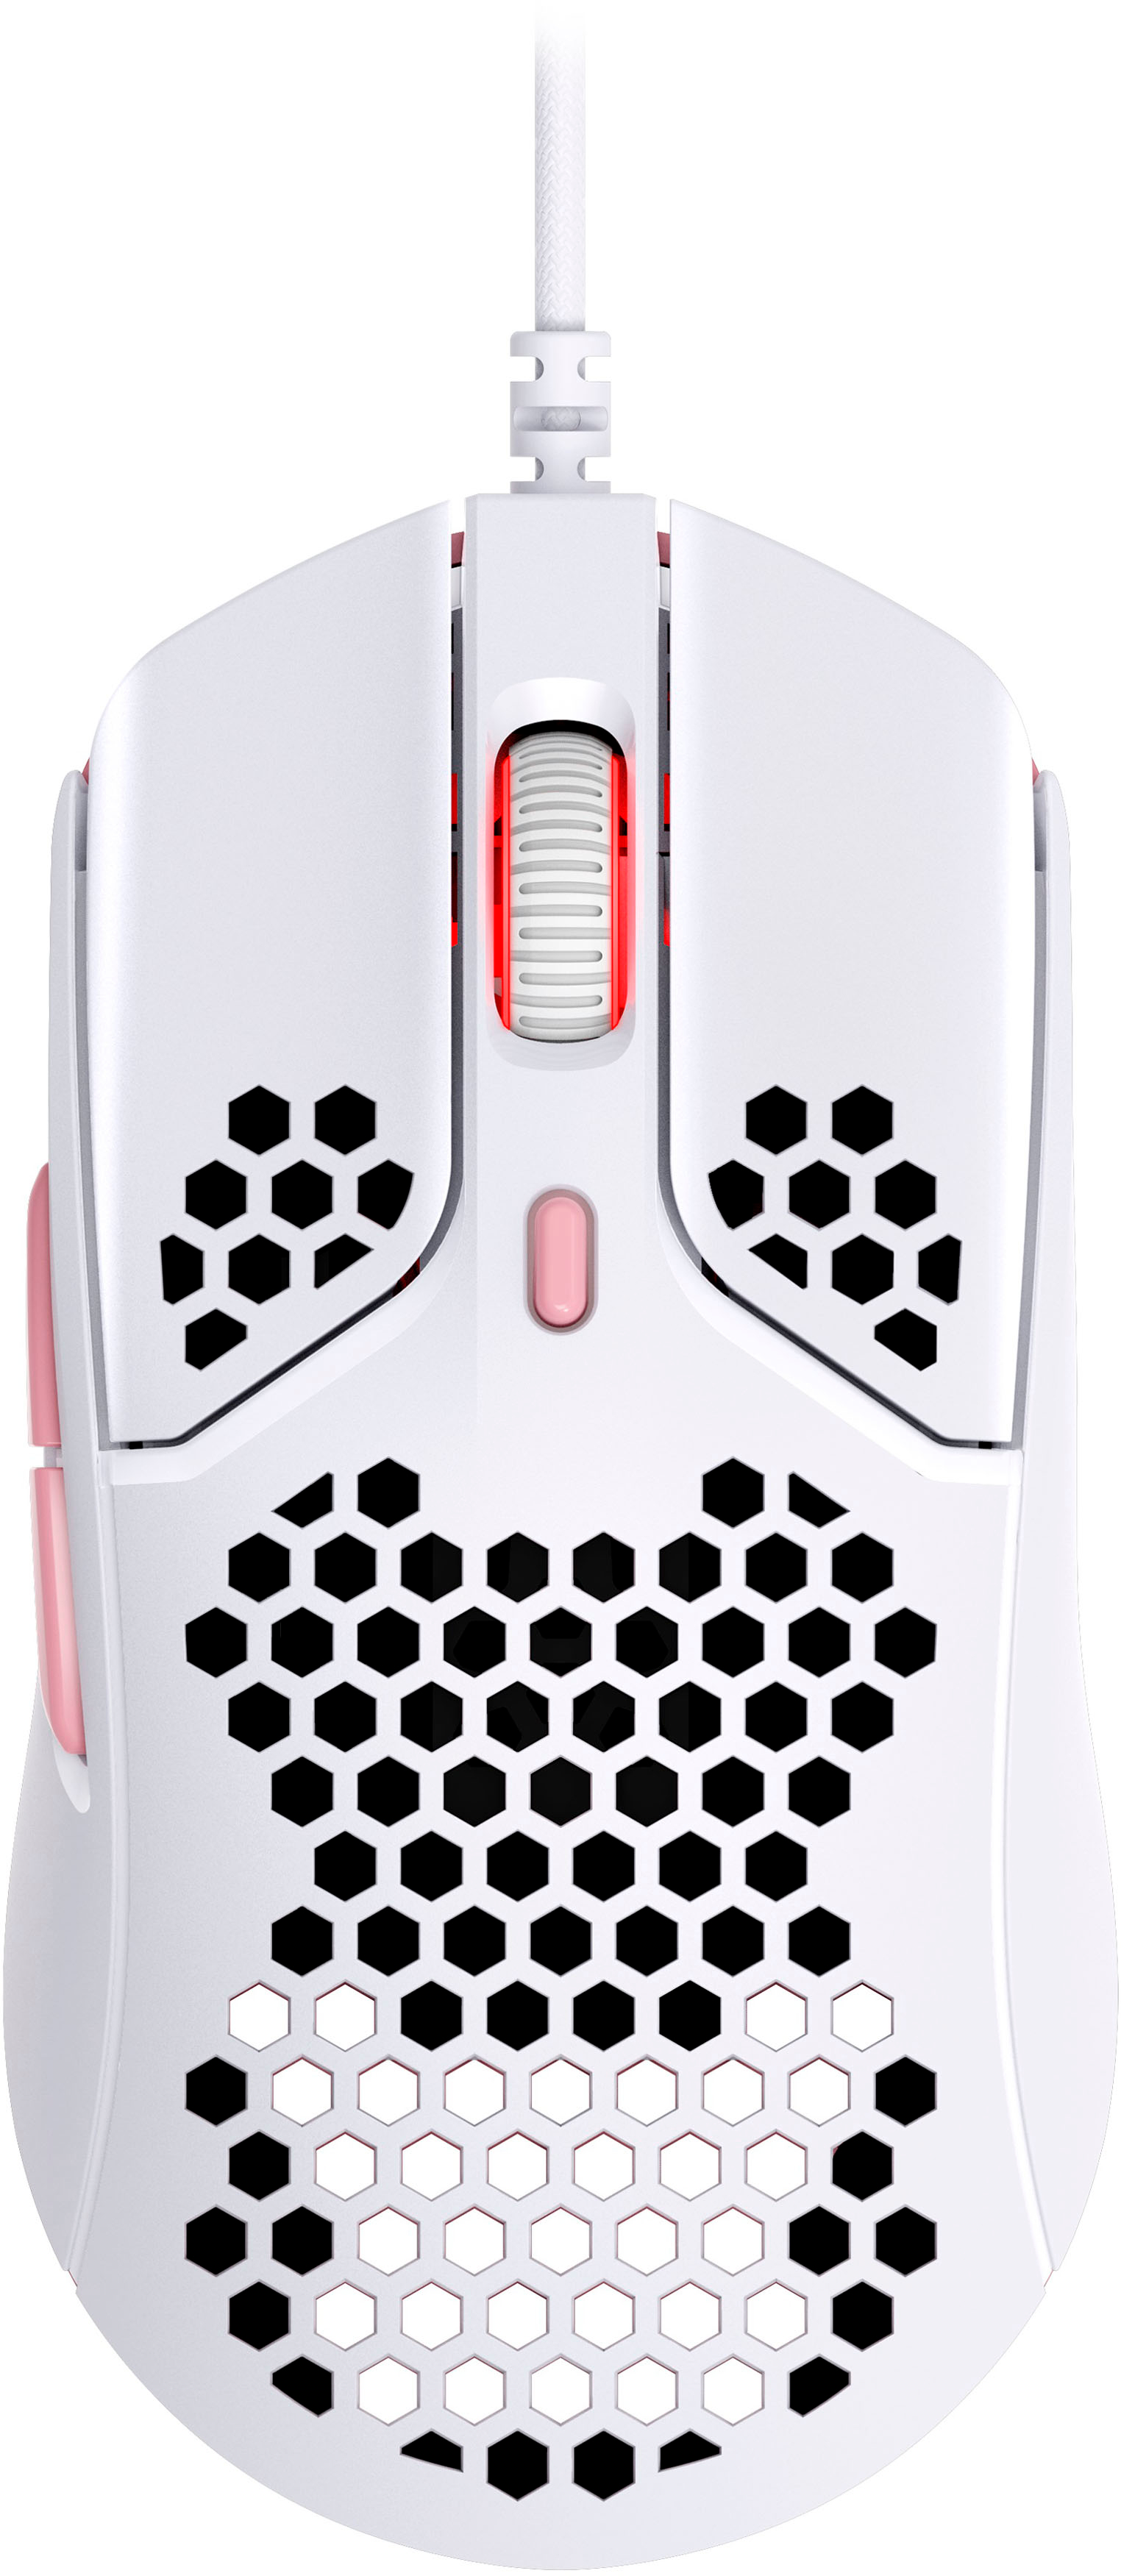 Logitech G G203 LIGHTSYNC Gaming Mouse - White - Micro Center